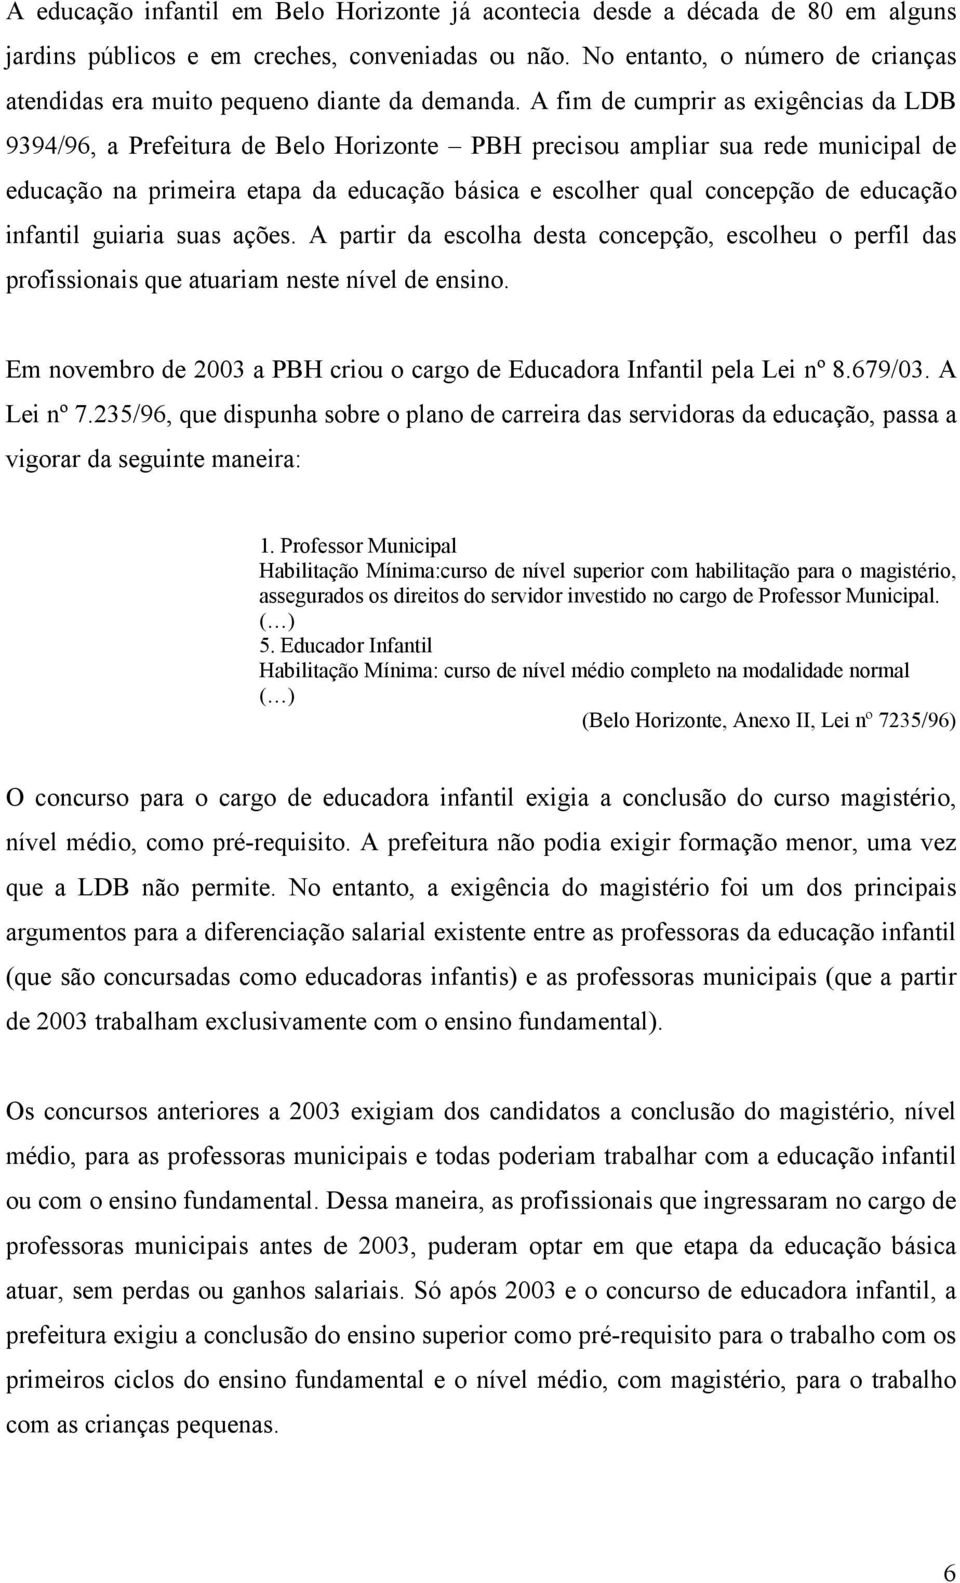 A fim de cumprir as exigências da LDB 9394/96, a Prefeitura de Belo Horizonte PBH precisou ampliar sua rede municipal de educação na primeira etapa da educação básica e escolher qual concepção de